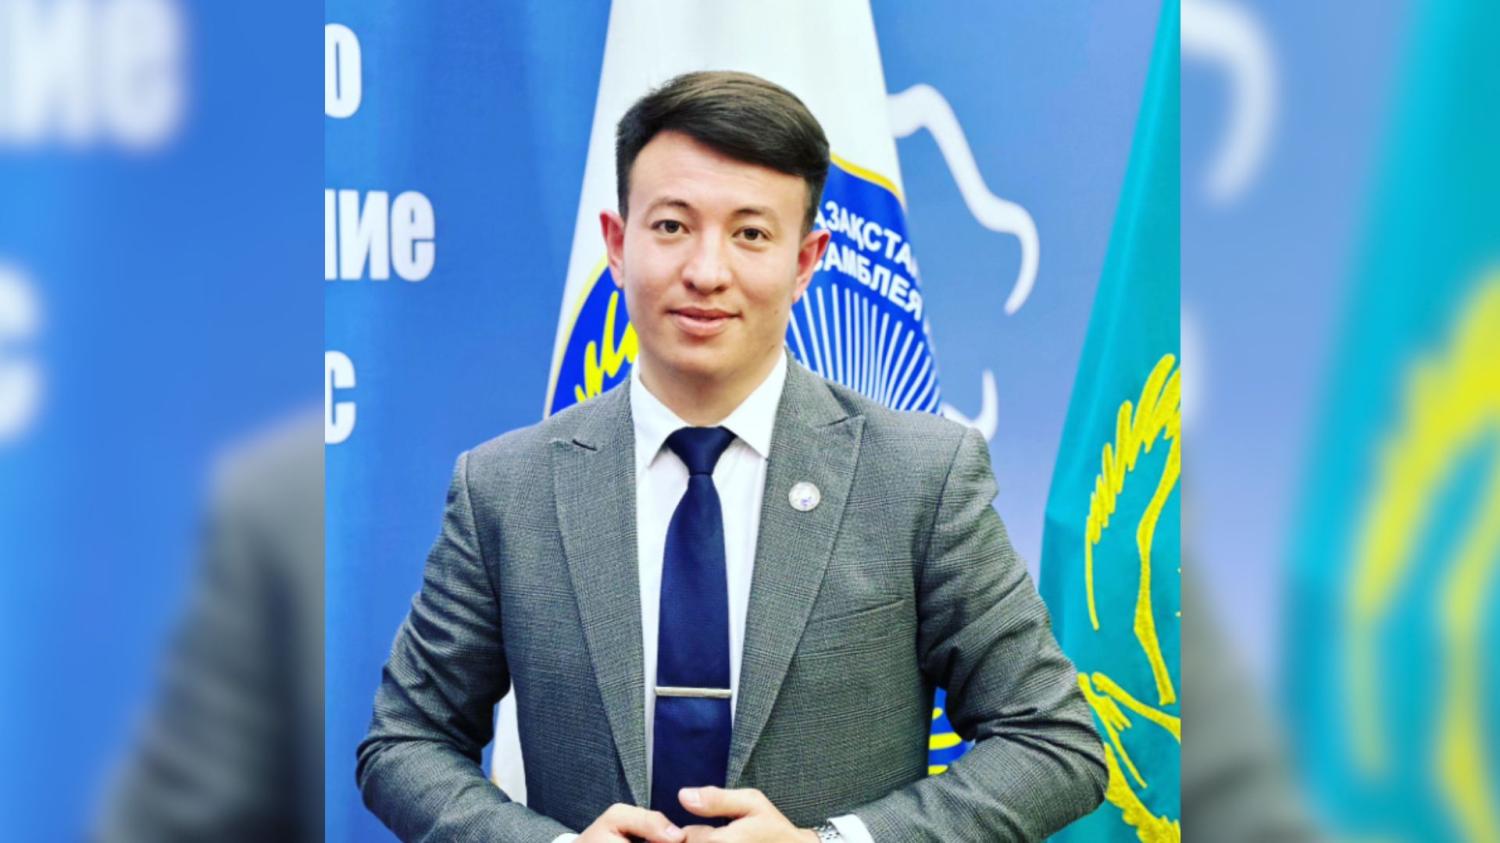 АНК играет важную роль в развитии страны - Руслан Мурзагалиев